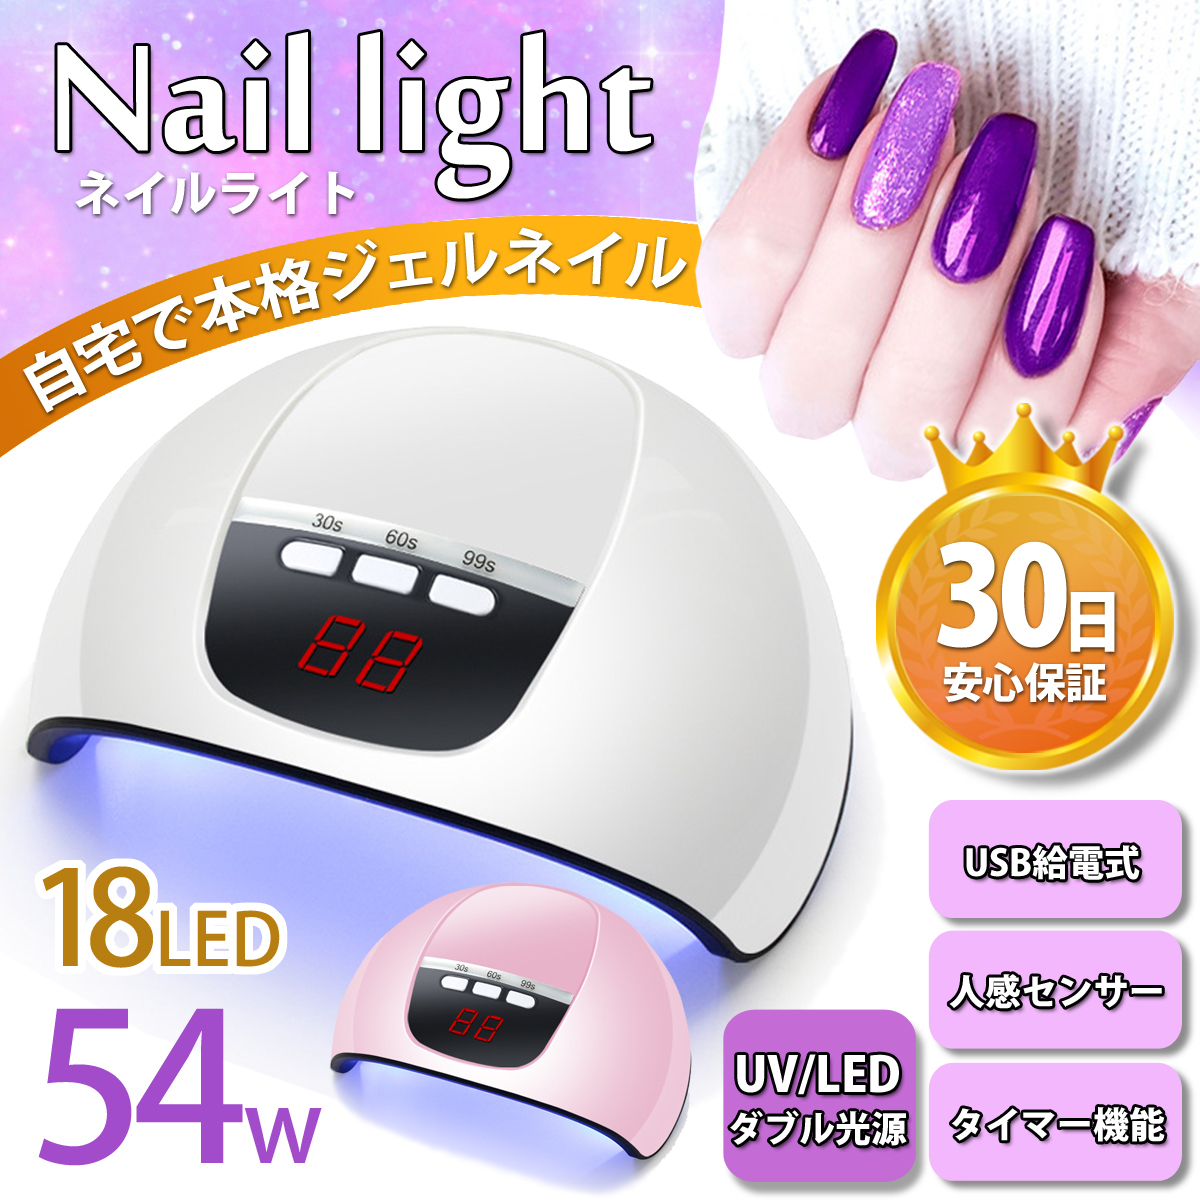  ногти свет LED гель UV свет ногти осушитель низкий нагрев LED 56W UV собственный ногти дом ногти 